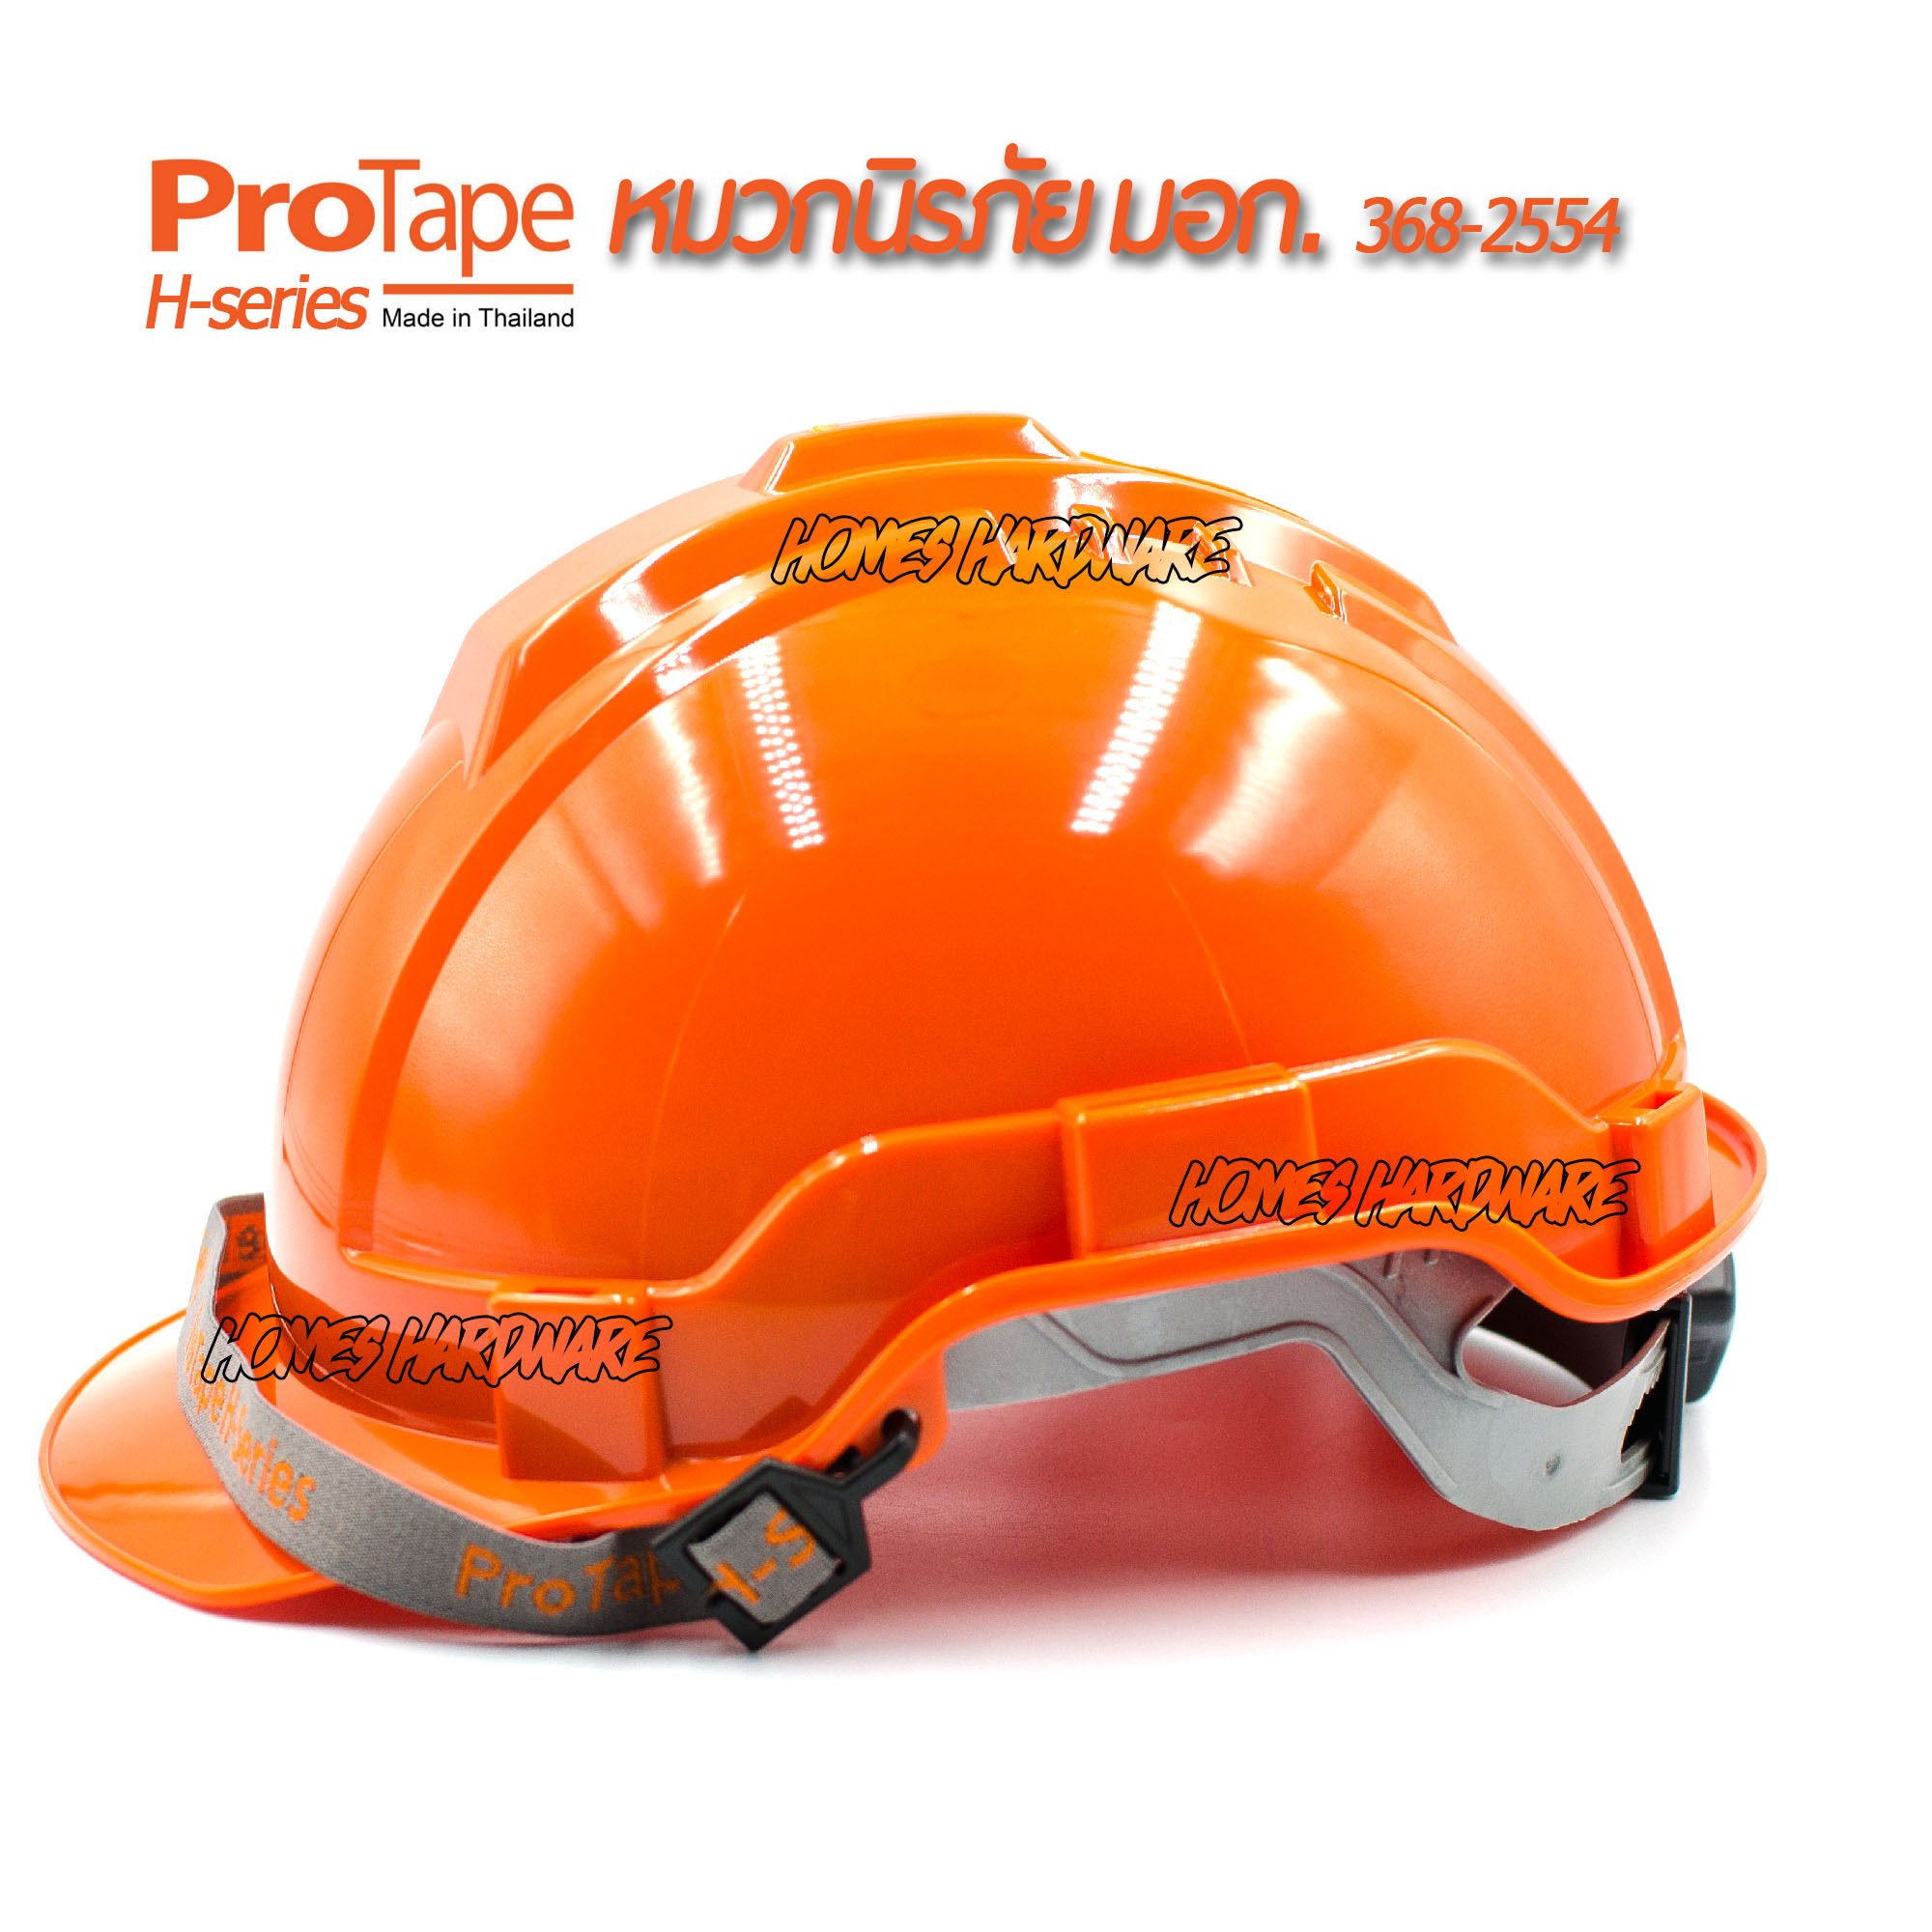 หมวกนิรภัย หมวกเซฟตี้ PROTAPE H-series สีส้ม ป้องกันแรงกระแทกสูง ผ่านการรับรองมาตรฐานความปลอยภัย มอก.368-2554 หมวกป้องกันศรีษะ